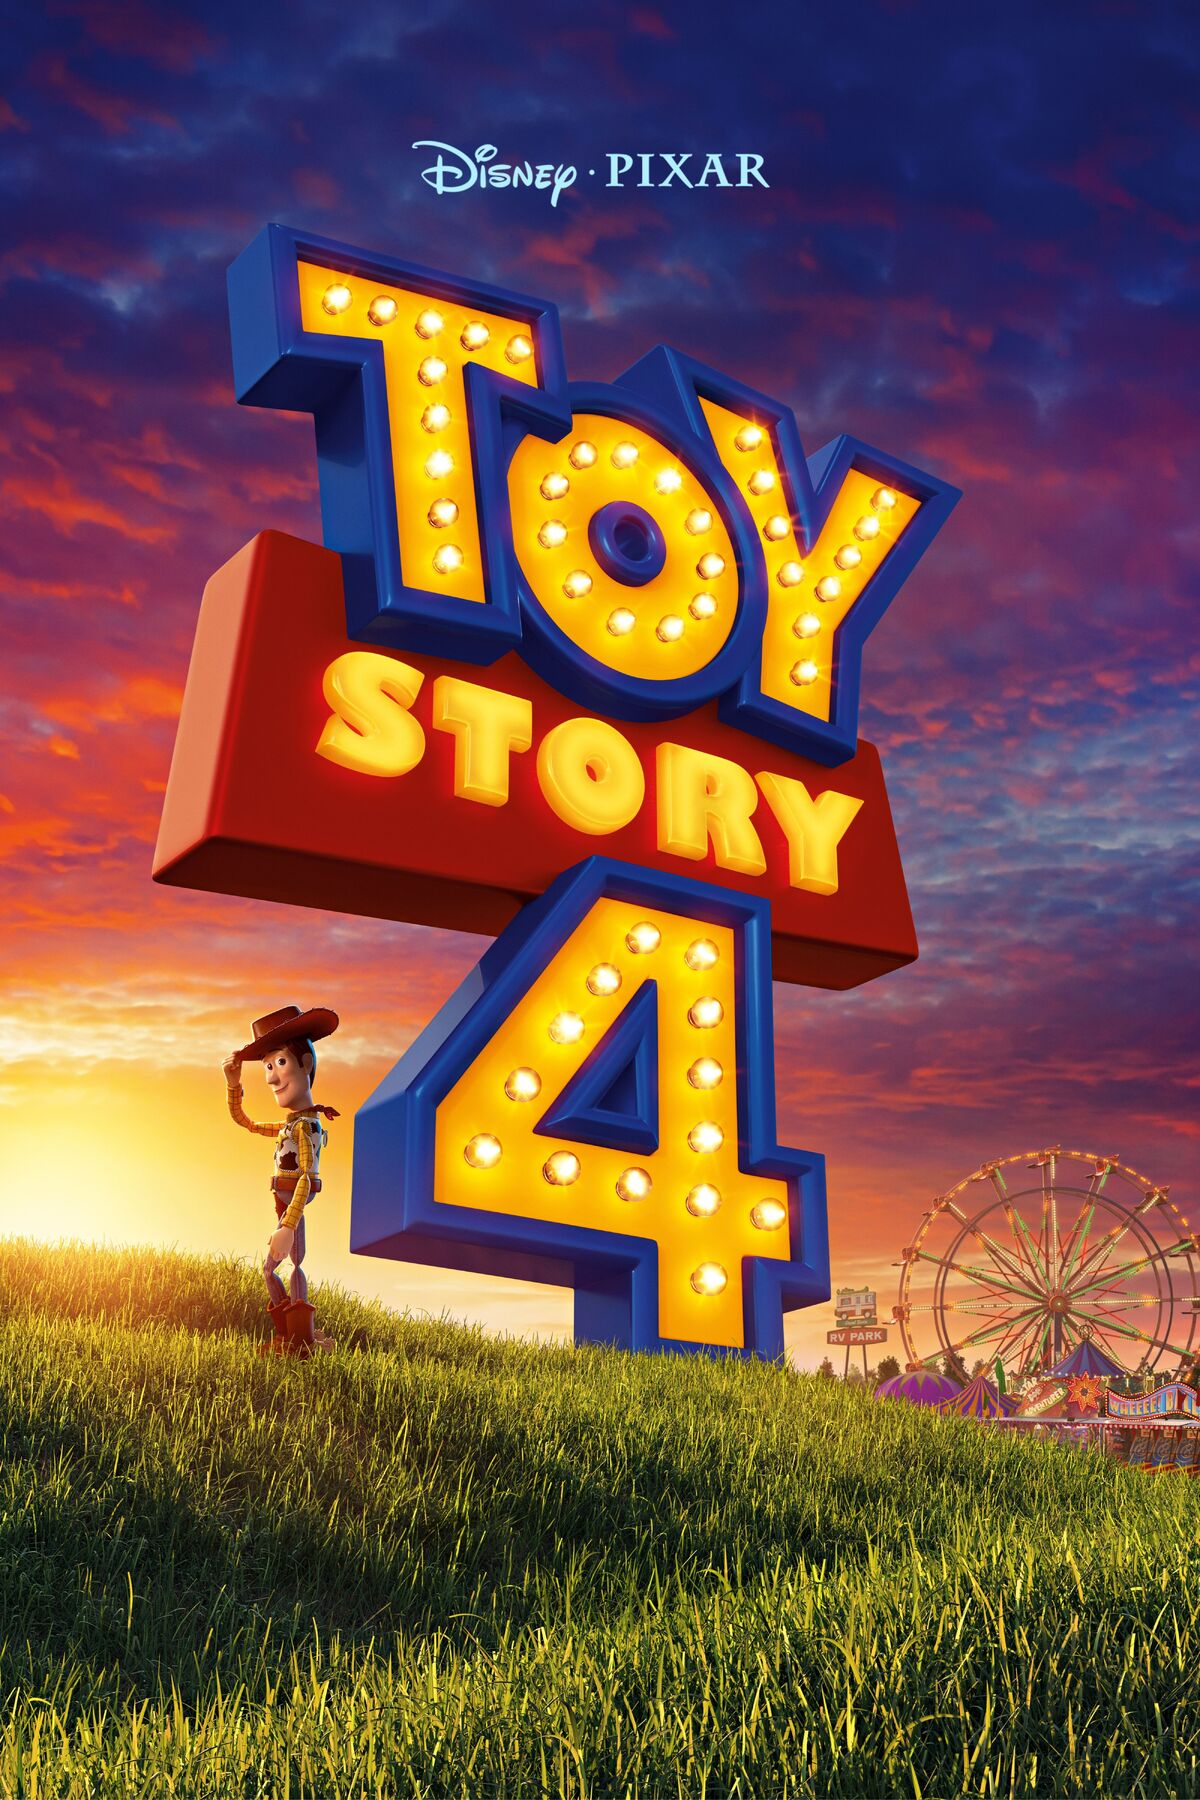 Toy Story 4: marcas lançam coleções inspiradas na animação da Disney